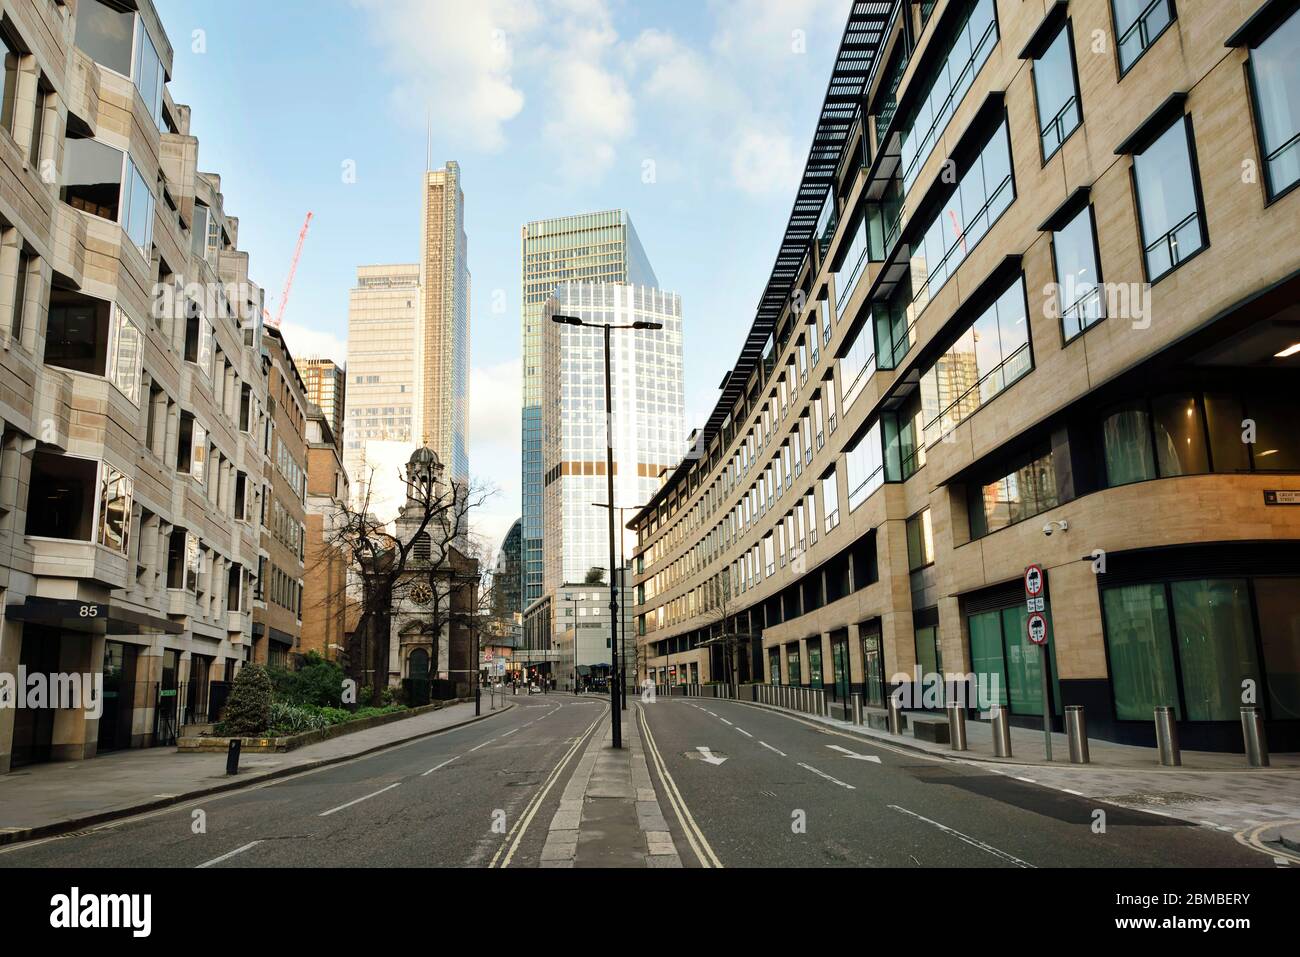 Die modernen Gebäude der London Wall mit 85 London Wall (links) und Deutsche Bank Büro (rechts). Die City of London am 7. Tag der Sperrung. März 2020 Stockfoto